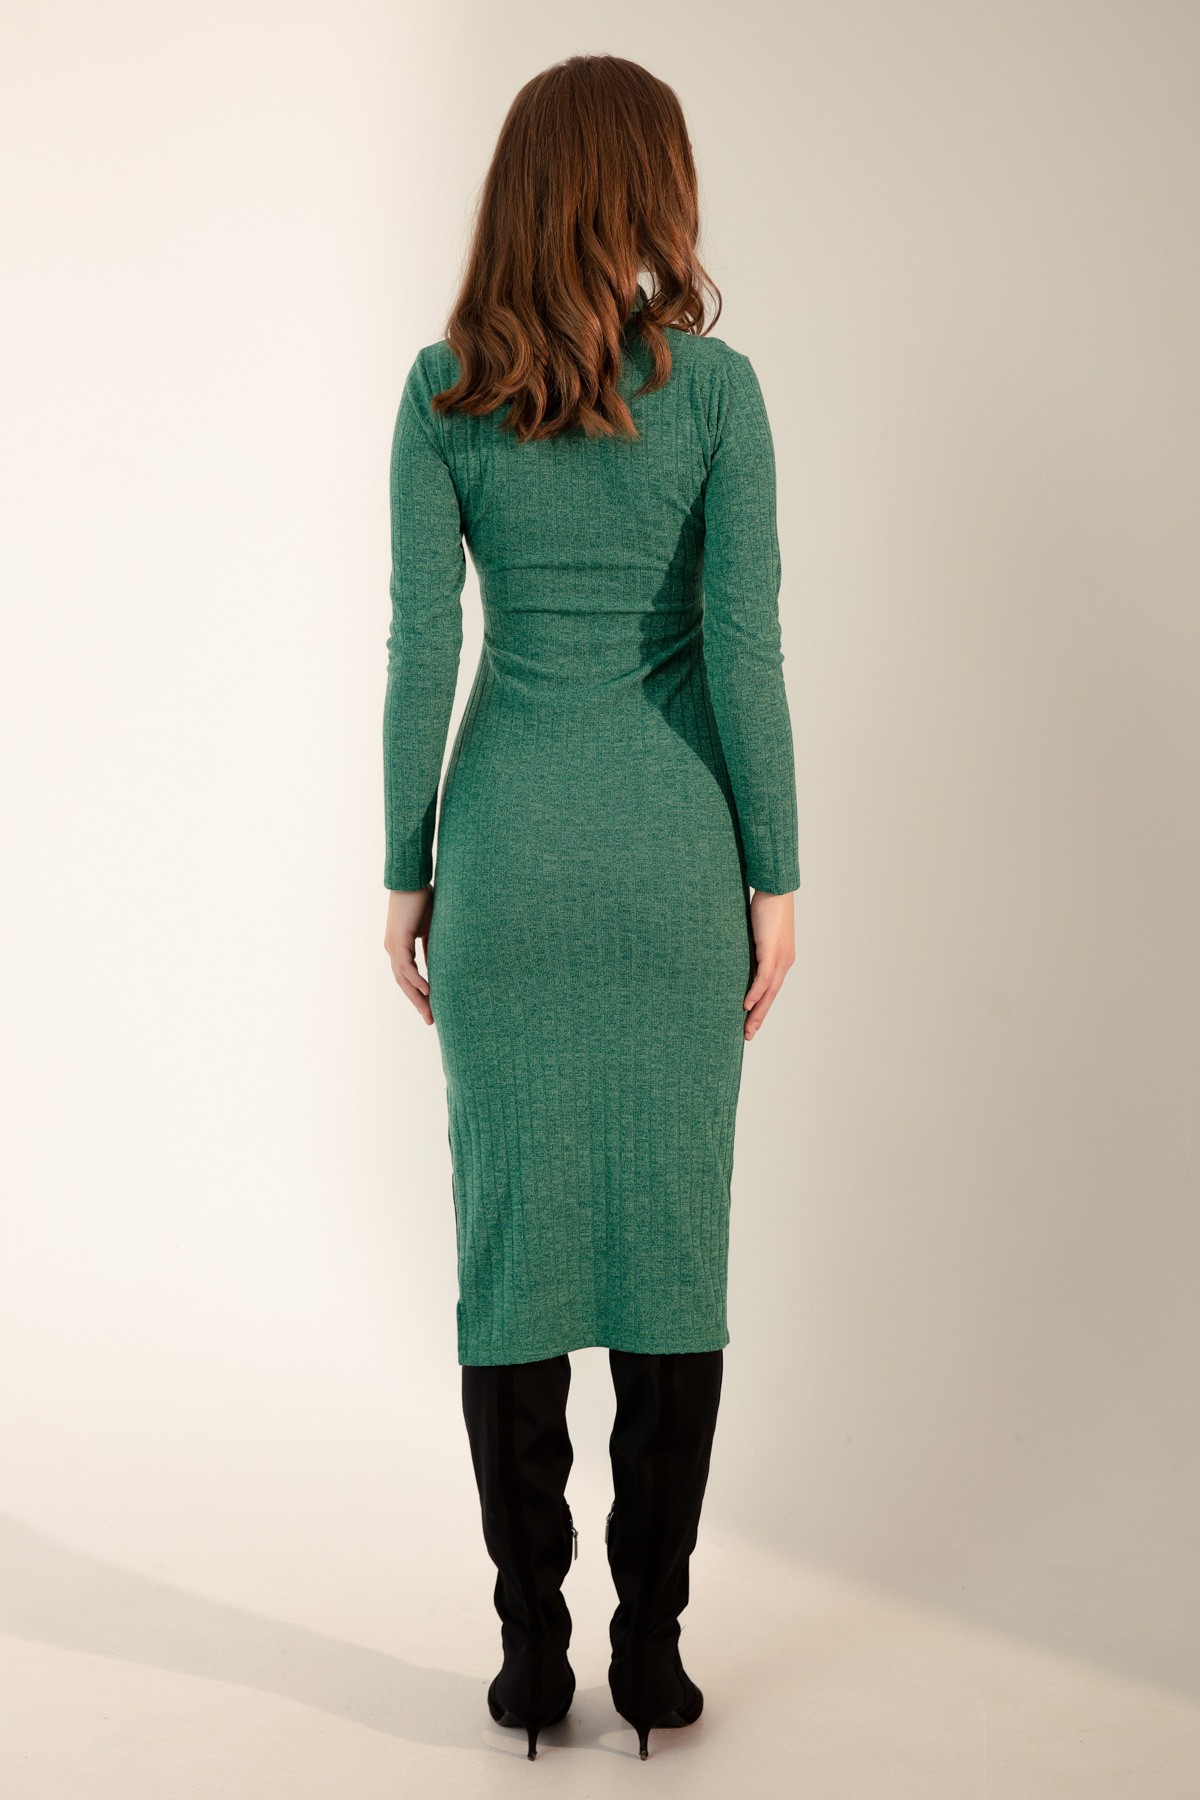 Kadın Uzun Örme Elbise - Yeşil